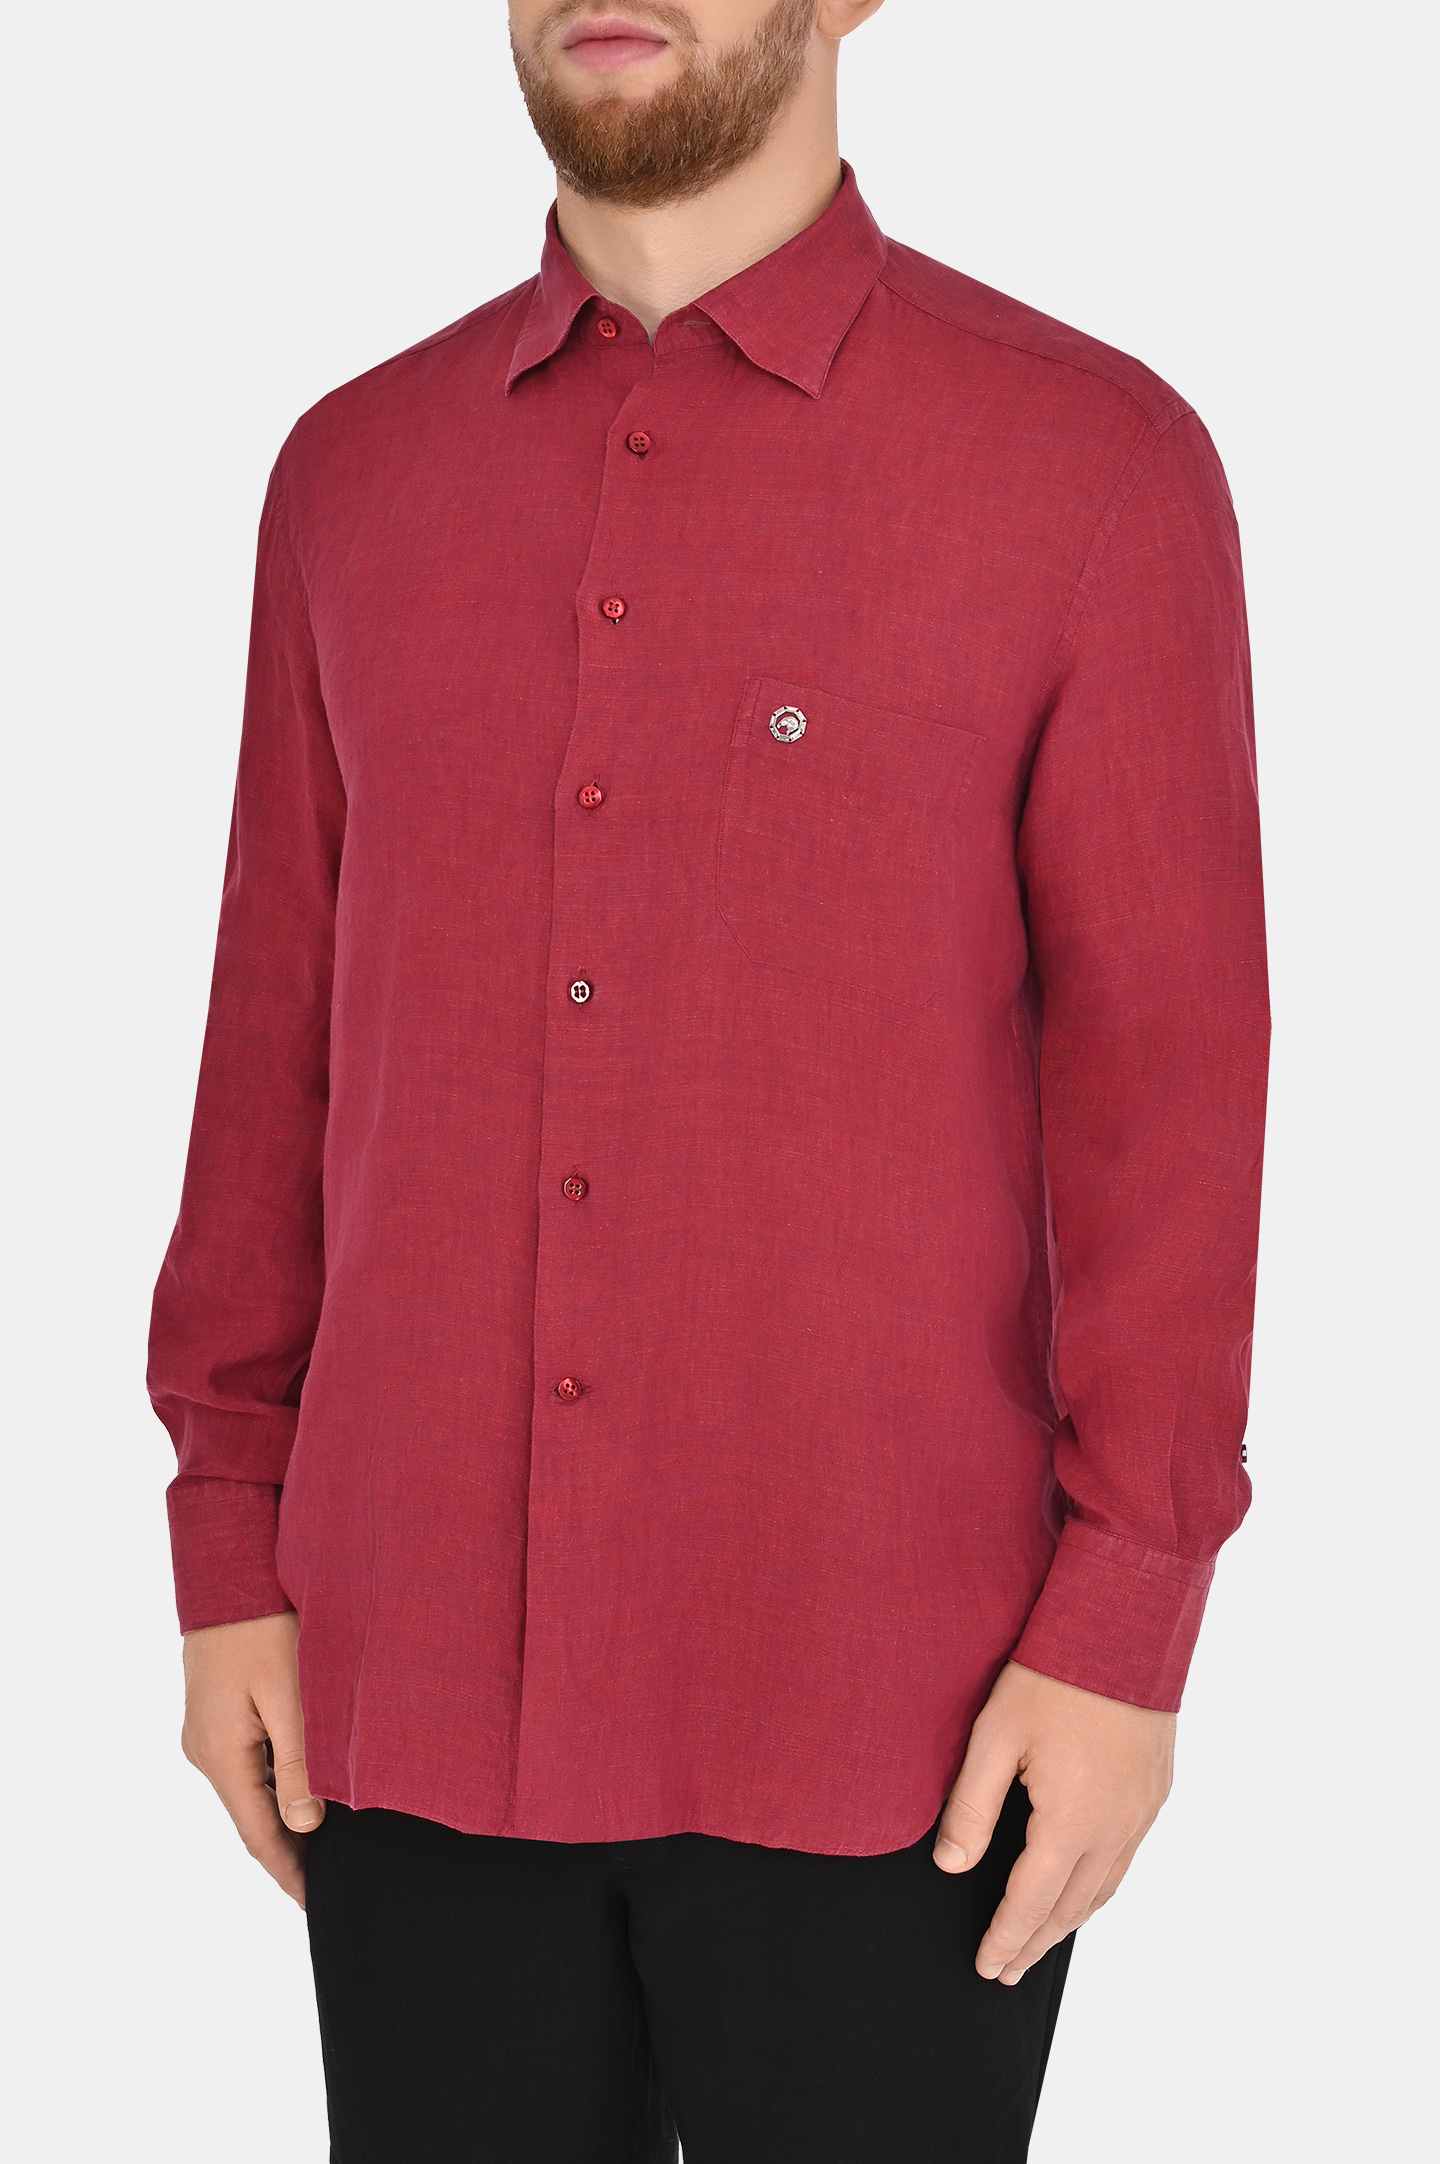 Рубашка STEFANO RICCI MC004932 LX2330, цвет: Малиновый, Мужской